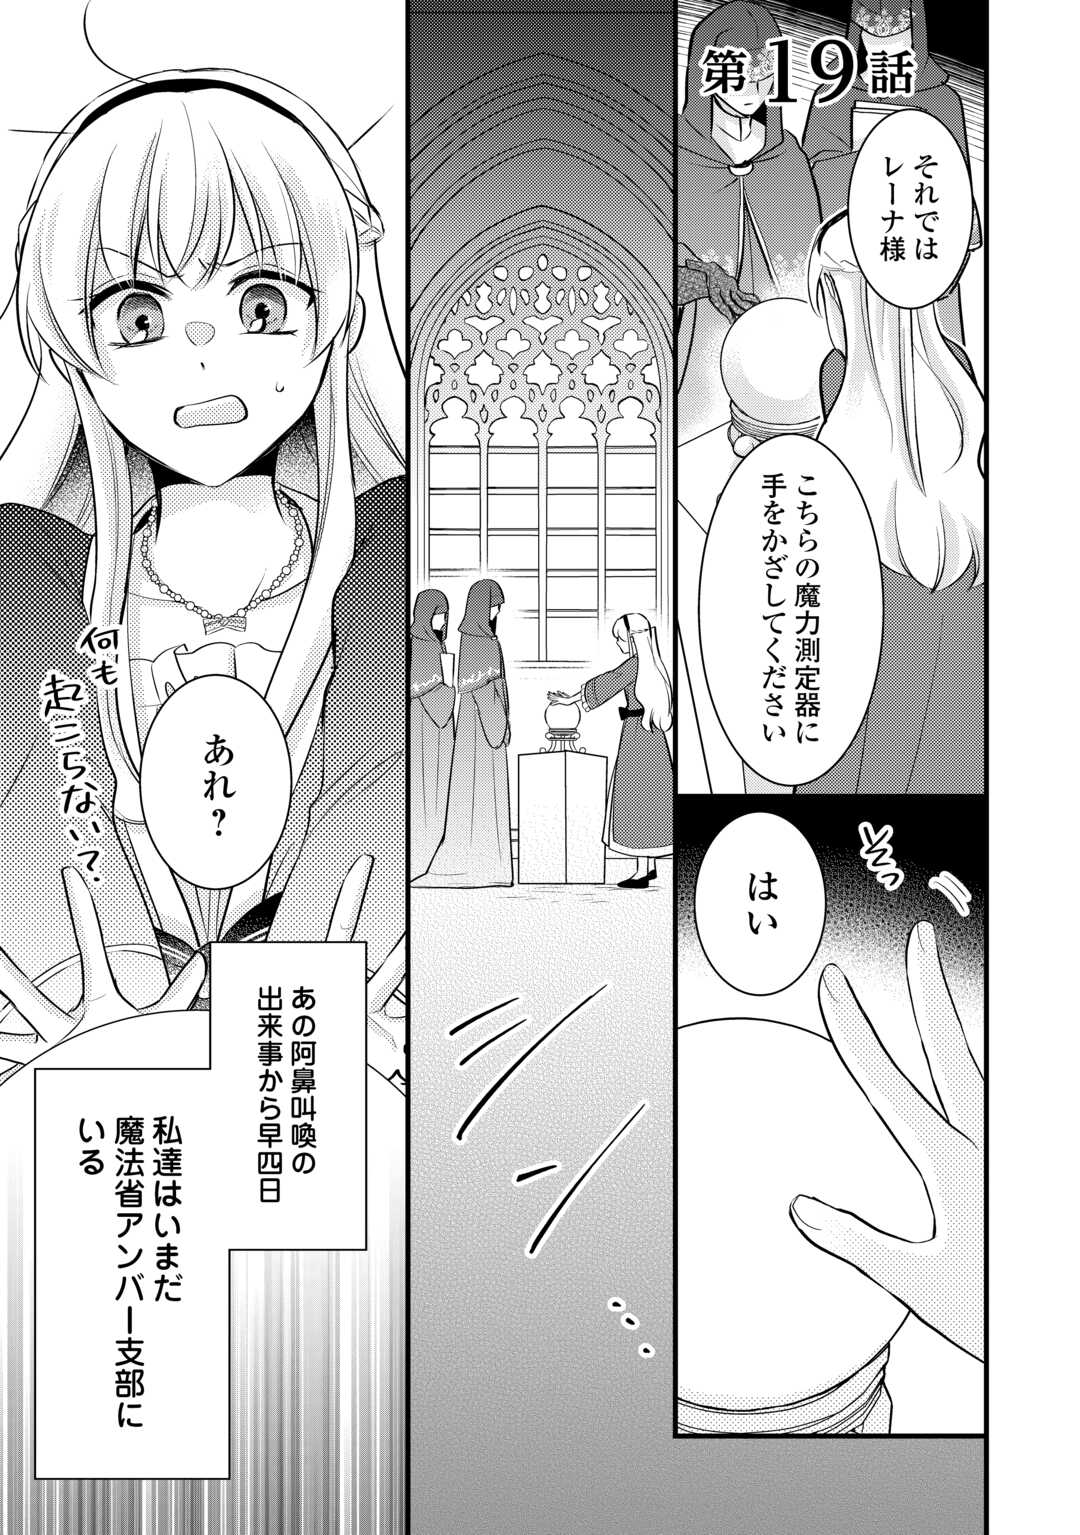 Akuyaku Reijou wa Heroine wo Ijimeteiru Baai de wa Nai - Chapter 19 - Page 1